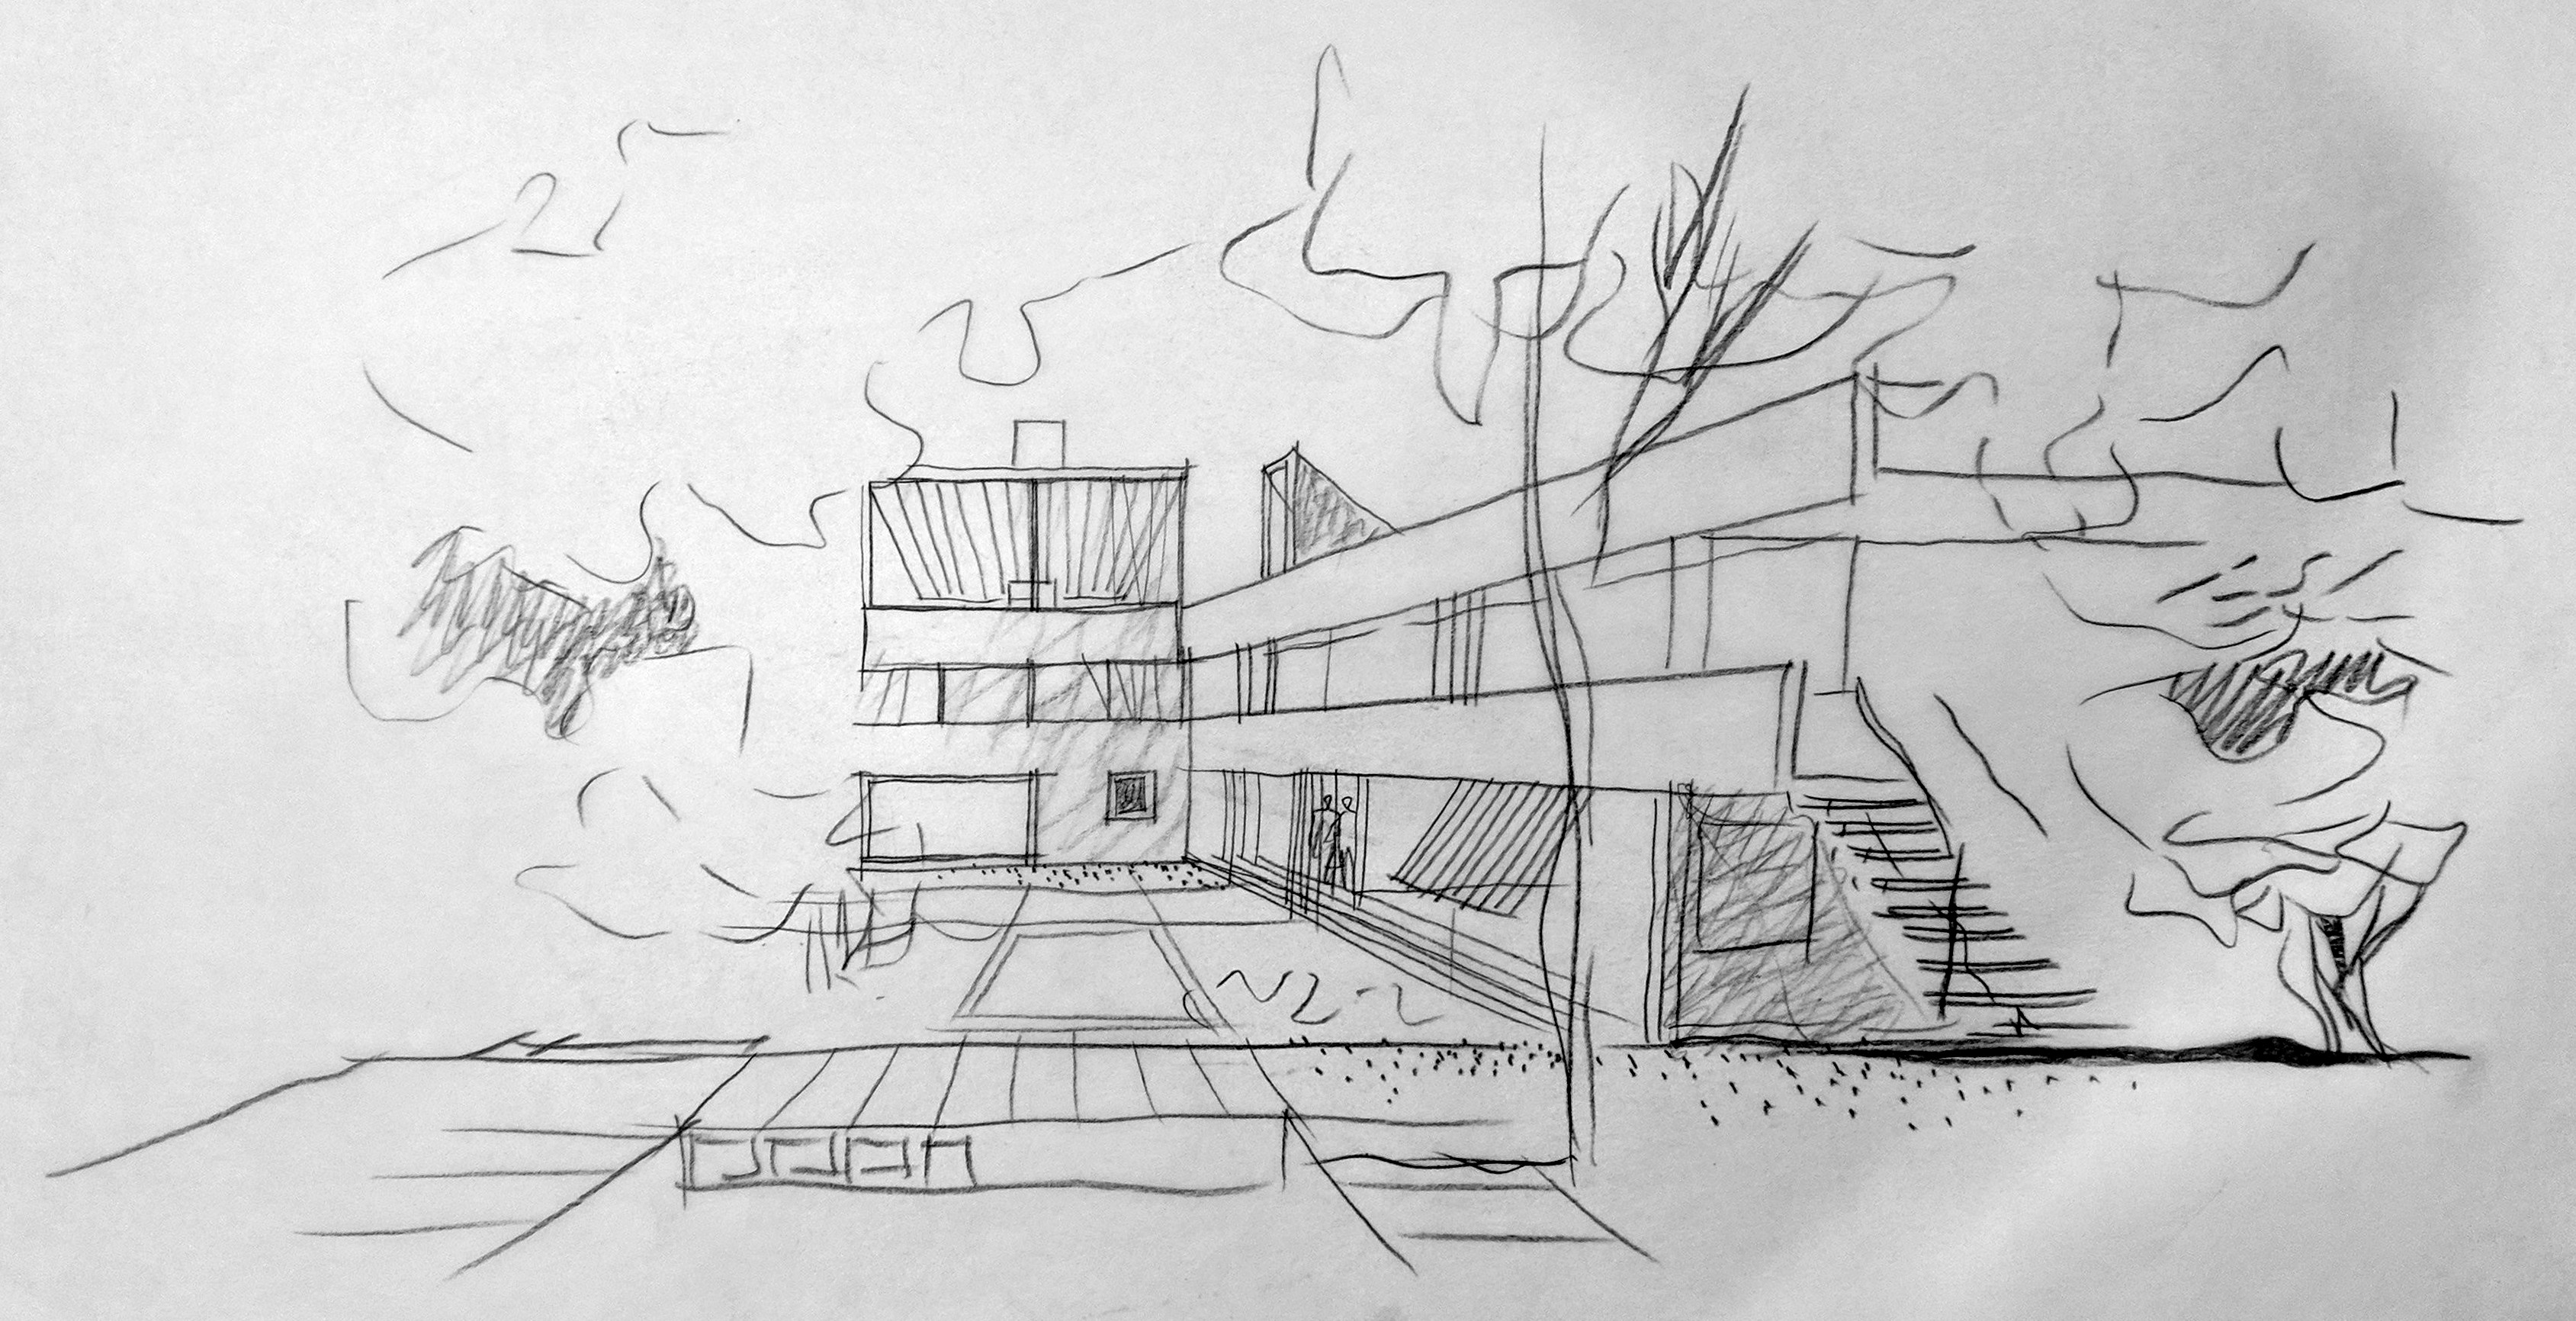 228-230 Delancey St - Schematic Backyard Perspective (1966)